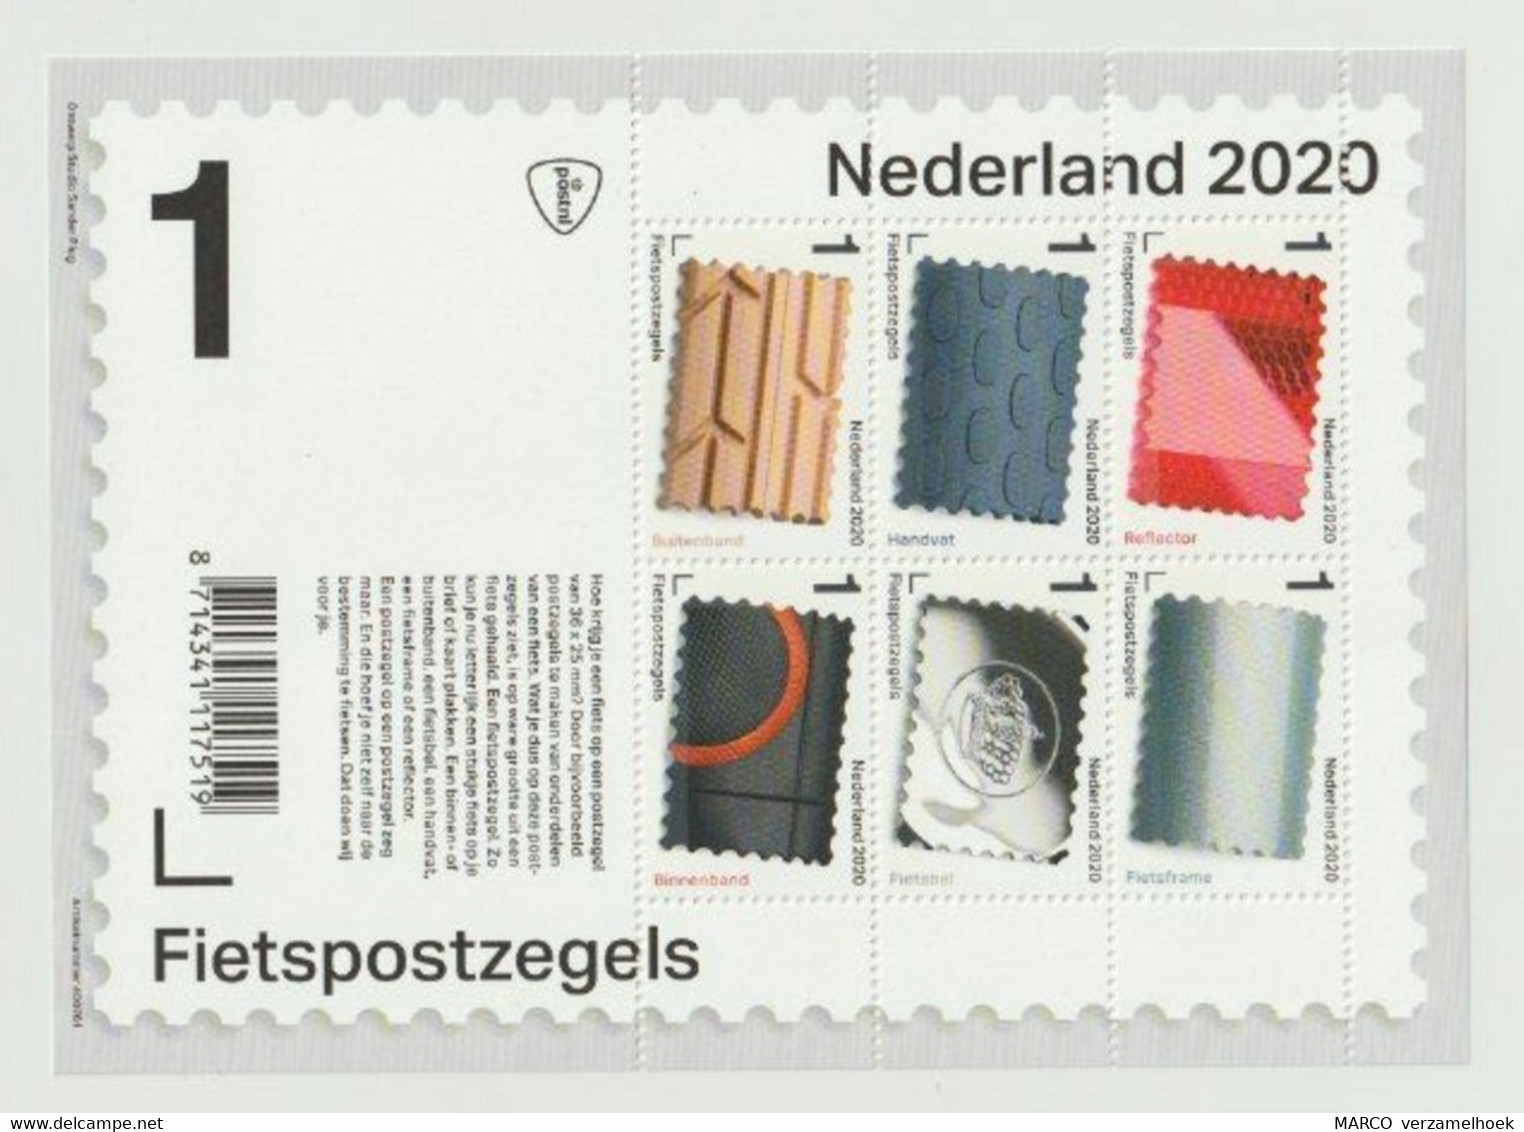 Nederland 2020 POSTZEGELVEL Fietspostzegels Velo-fiets-bicycle-fahrrad (NL) - Unclassified